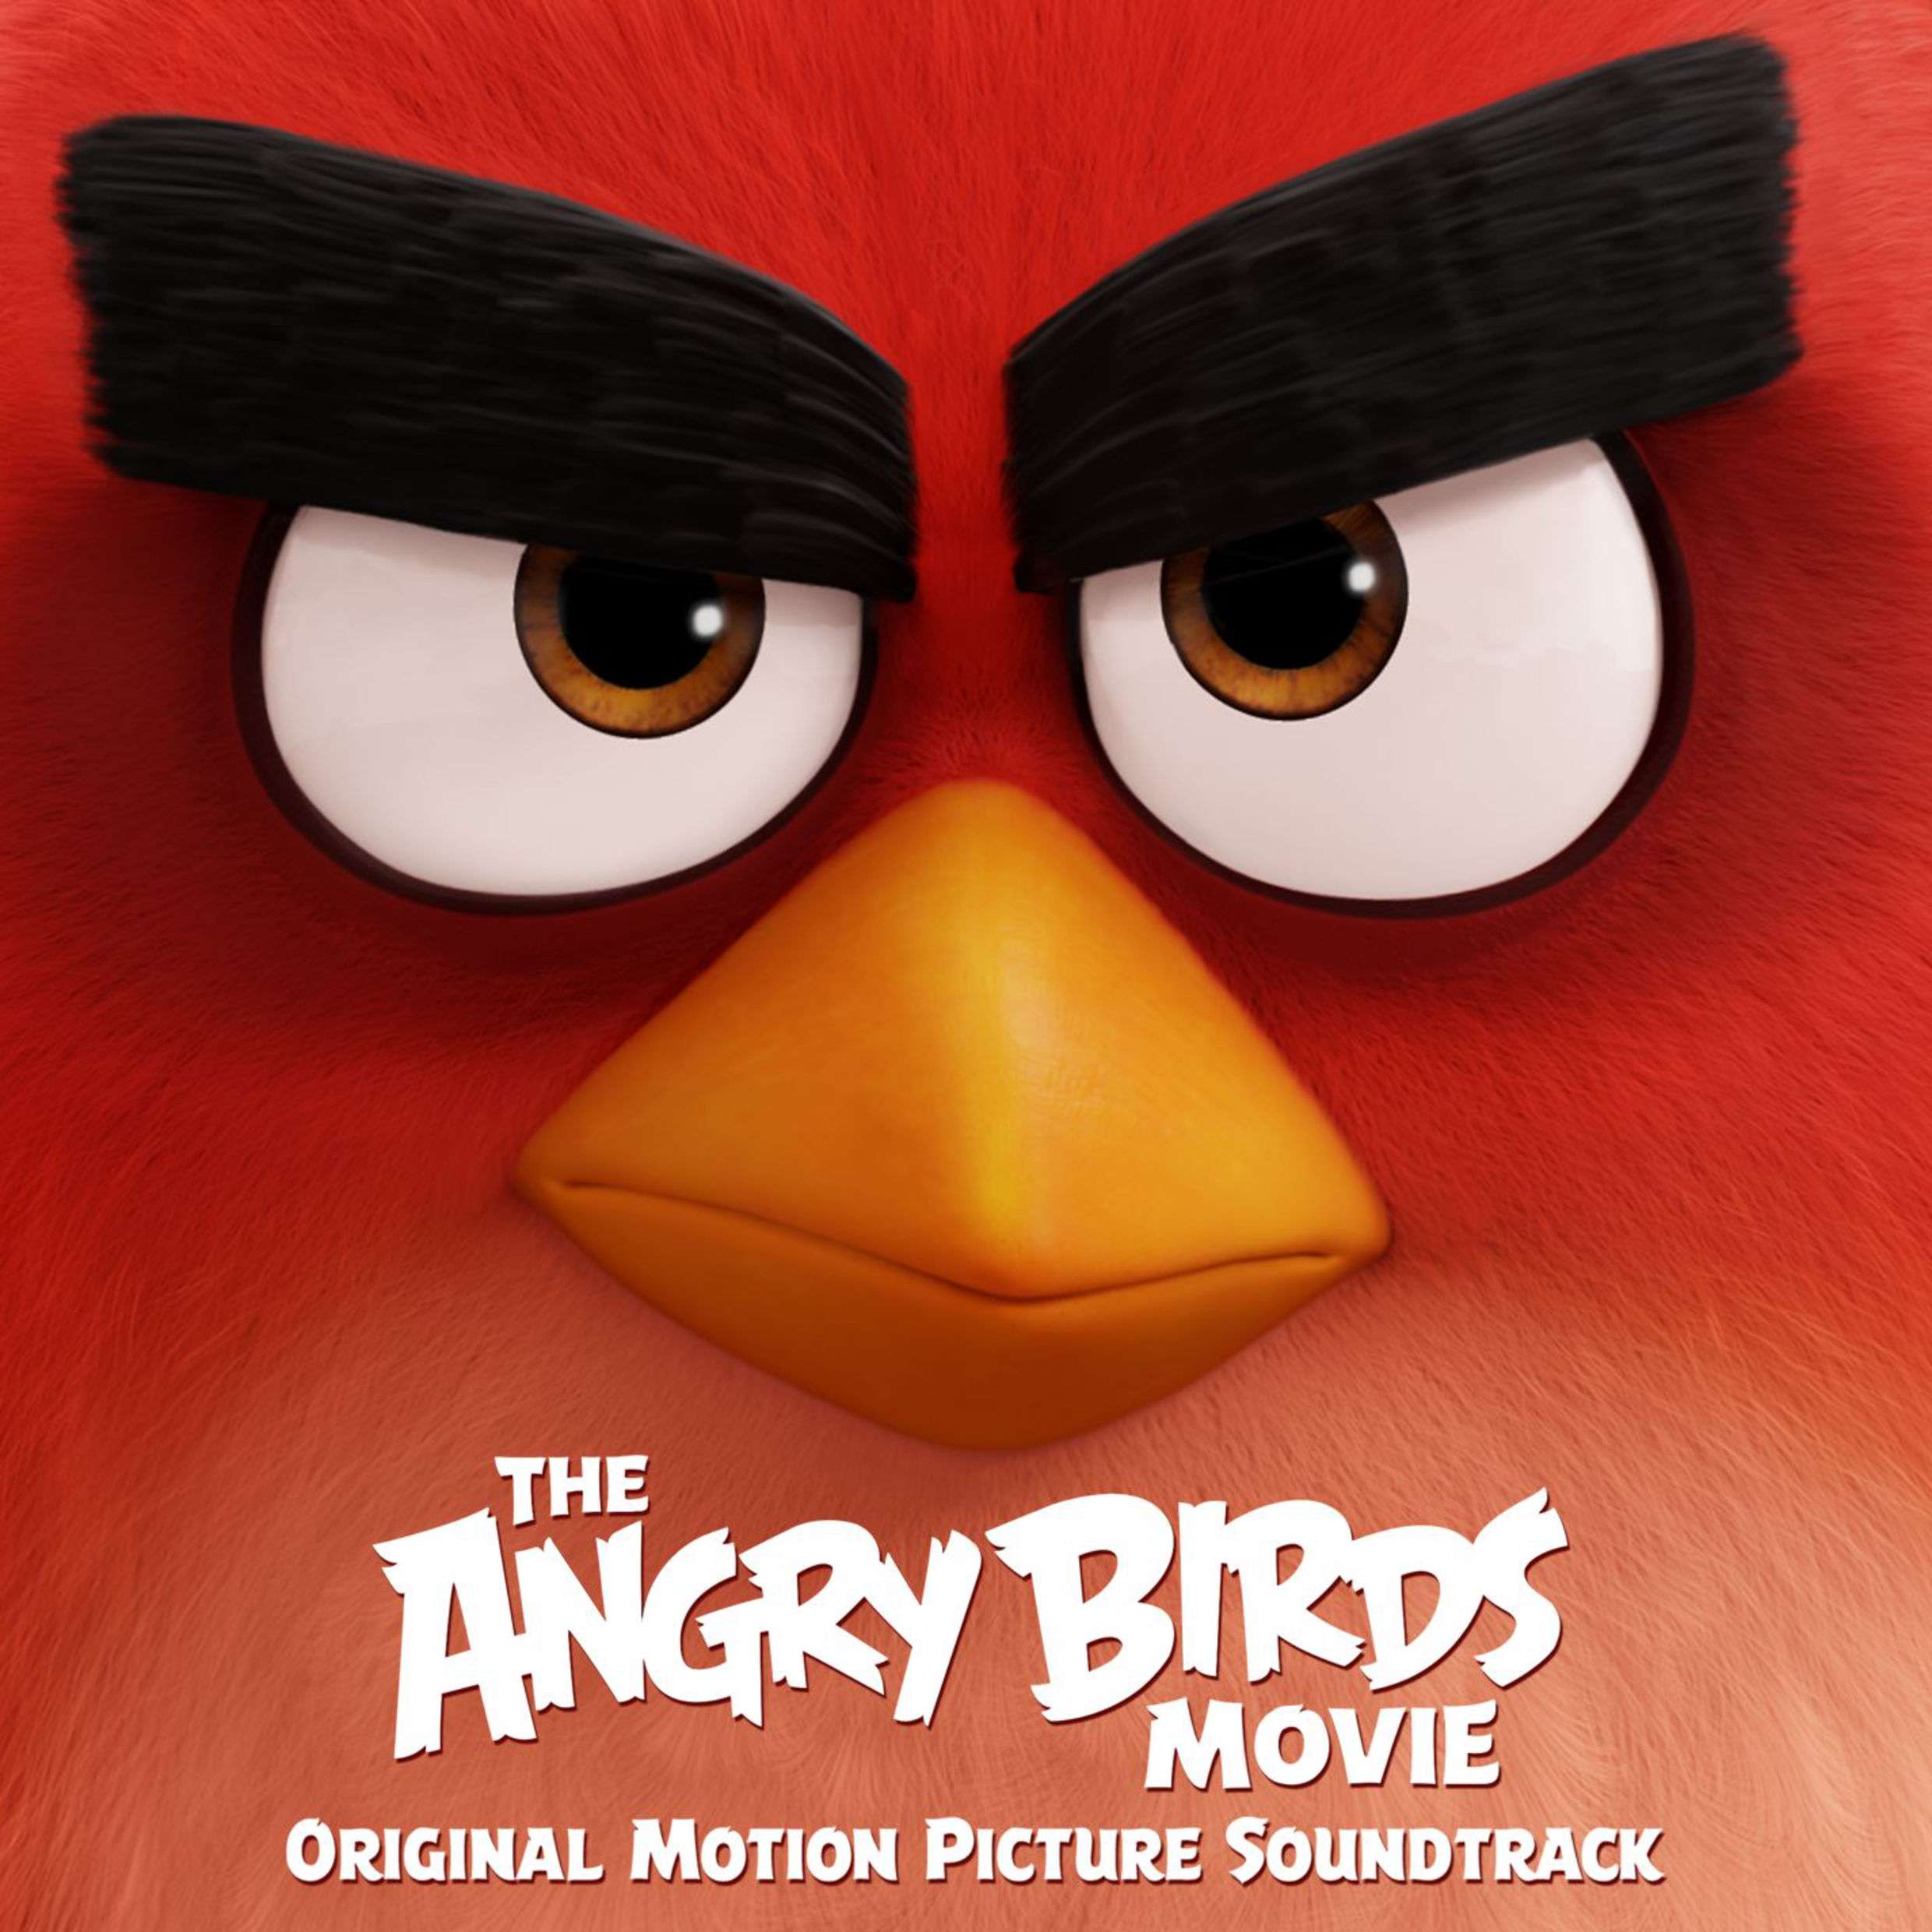 الموسيقى التصويرية للفيلم الكرتوني The Angry Birds 2016 320kbps